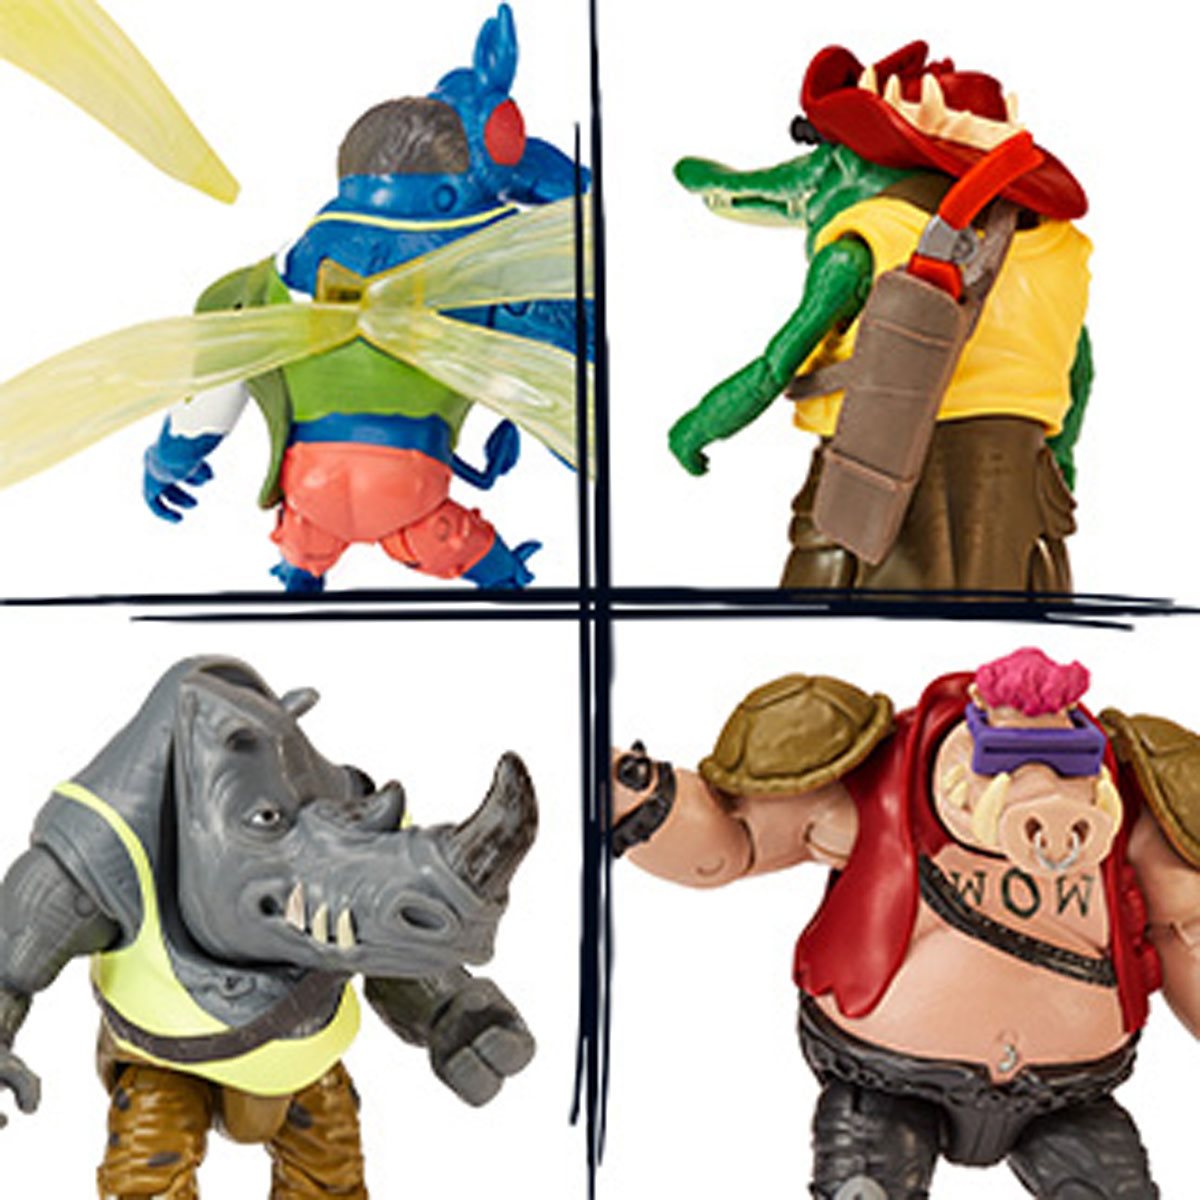 Teenage Mutant Ninja Turtles: Mutant Mayhem Costume Turtle Basic Figure  4-Pack by Playmates Toys 